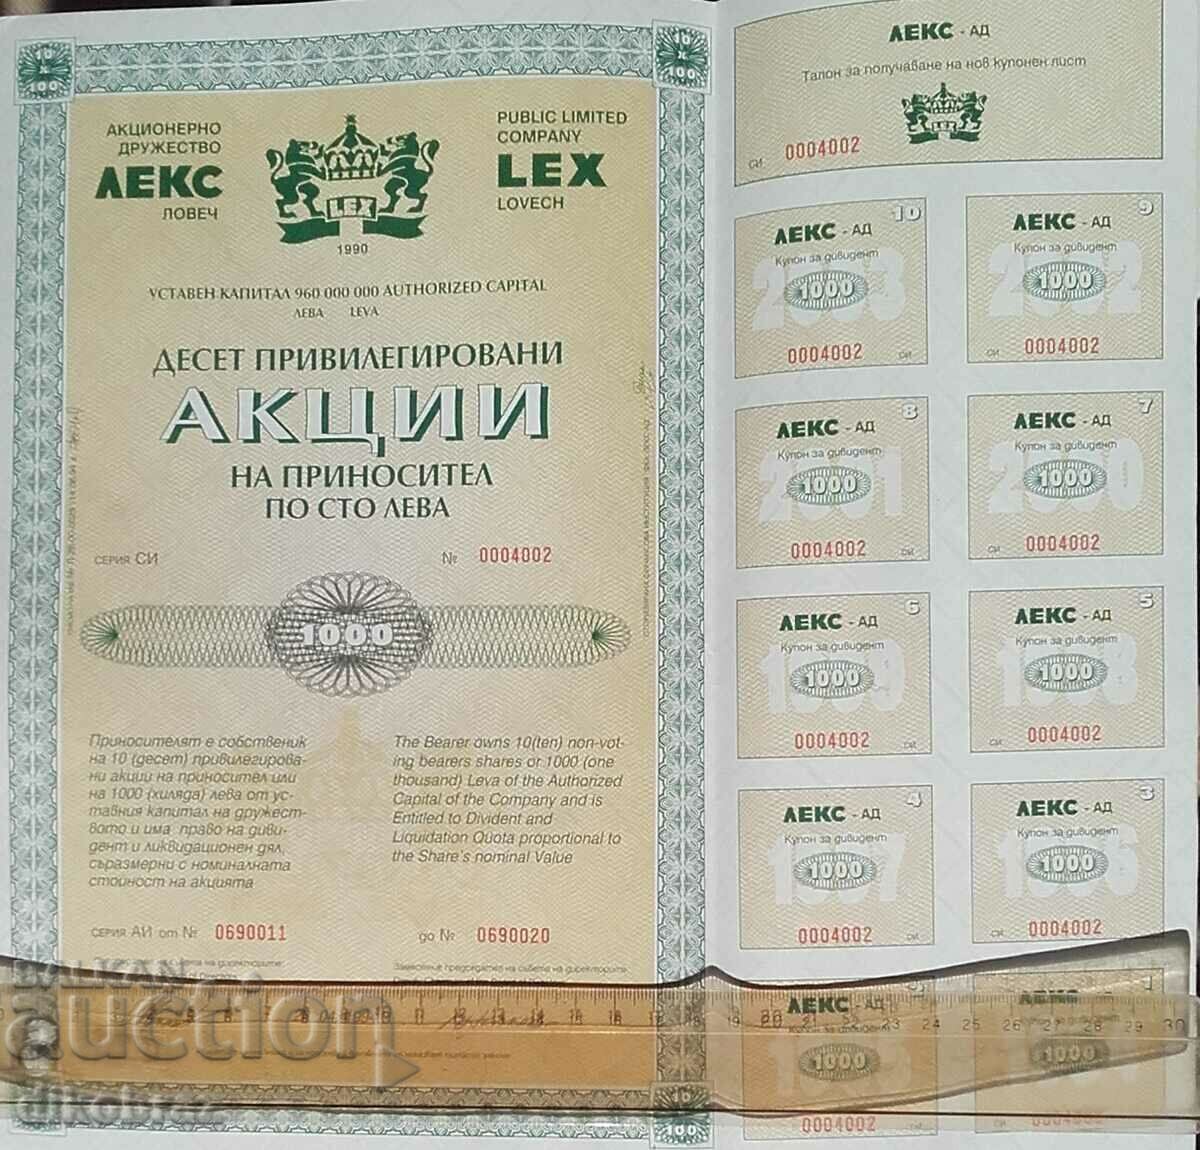 LEX μ.Χ. - Λόβετς, 10 μετοχές x 100 λέβα το 1994, με κουπόνια